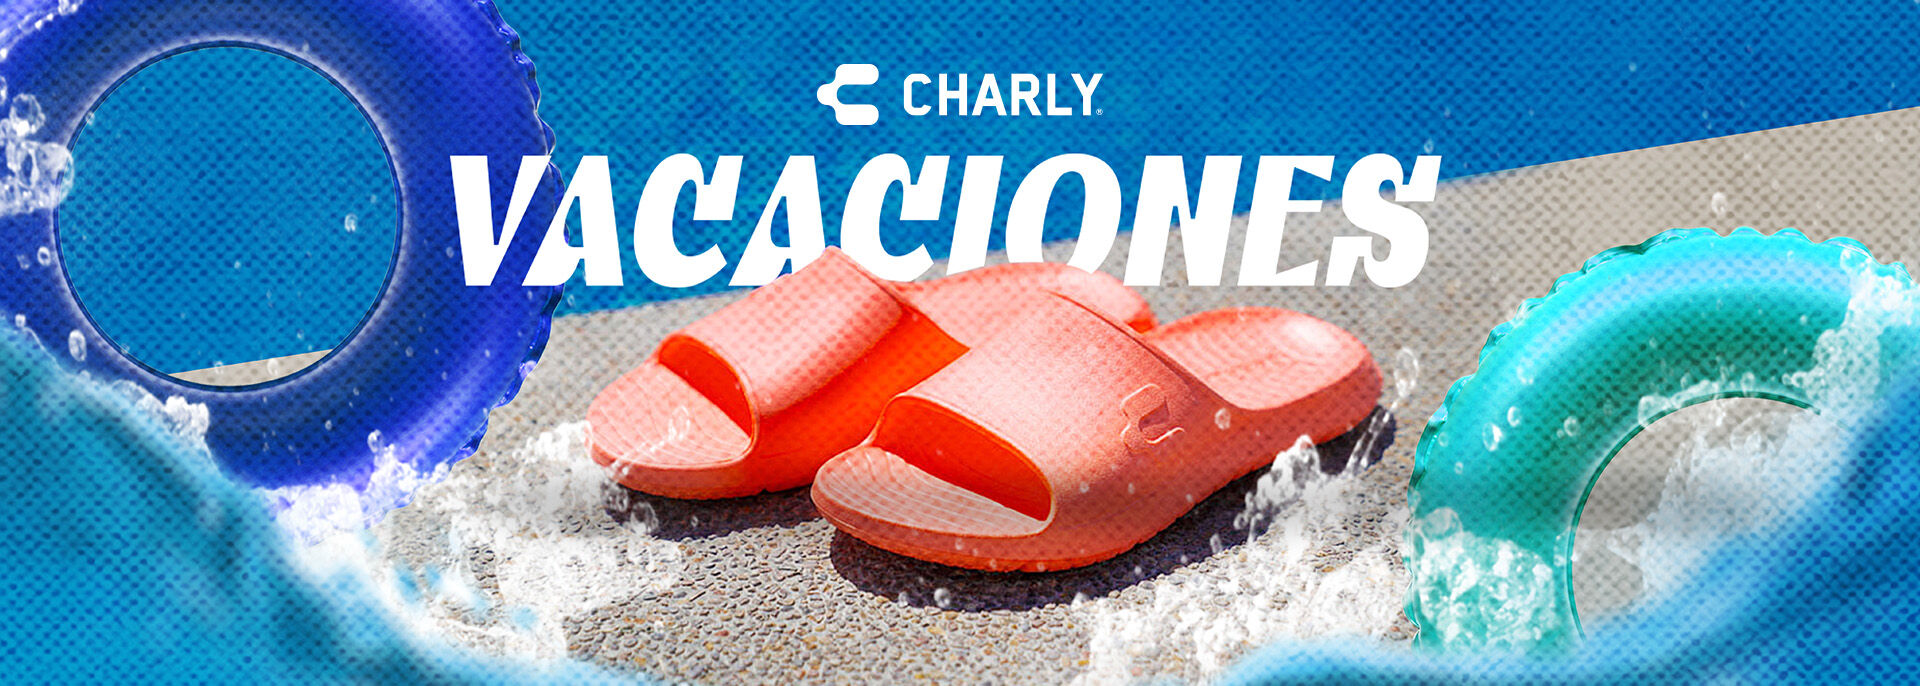 Charly_Vacaciones_D.jpg